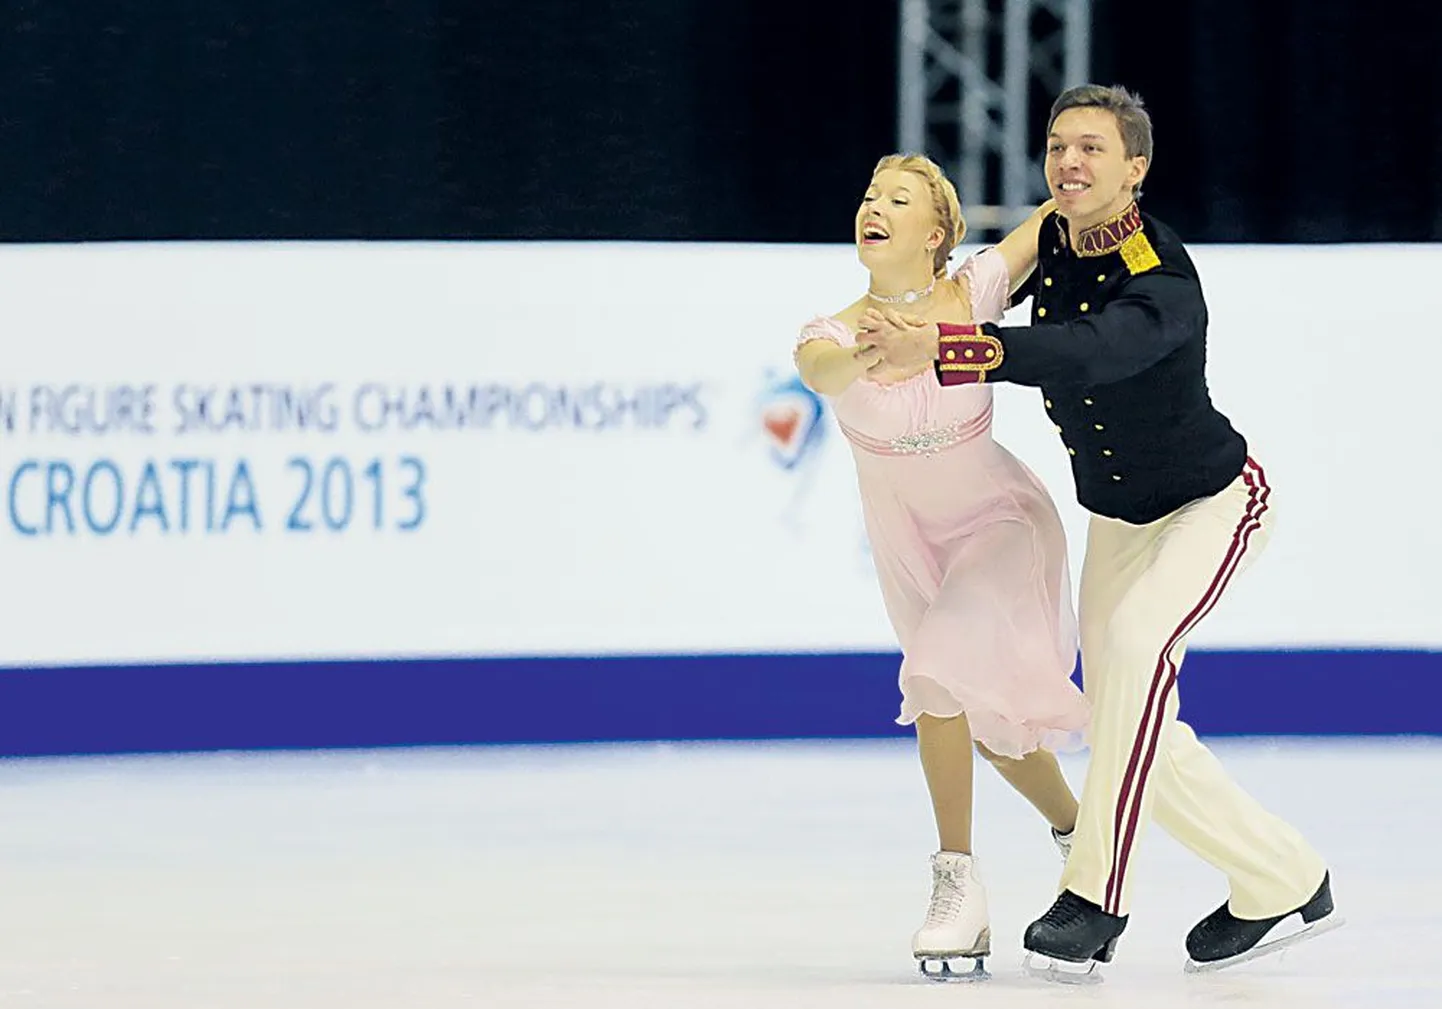 Первое место после коротких танцев занимают серебряные призеры прошлогоднего первенства Екатерина Боброва и Дмитрий Соловьев.